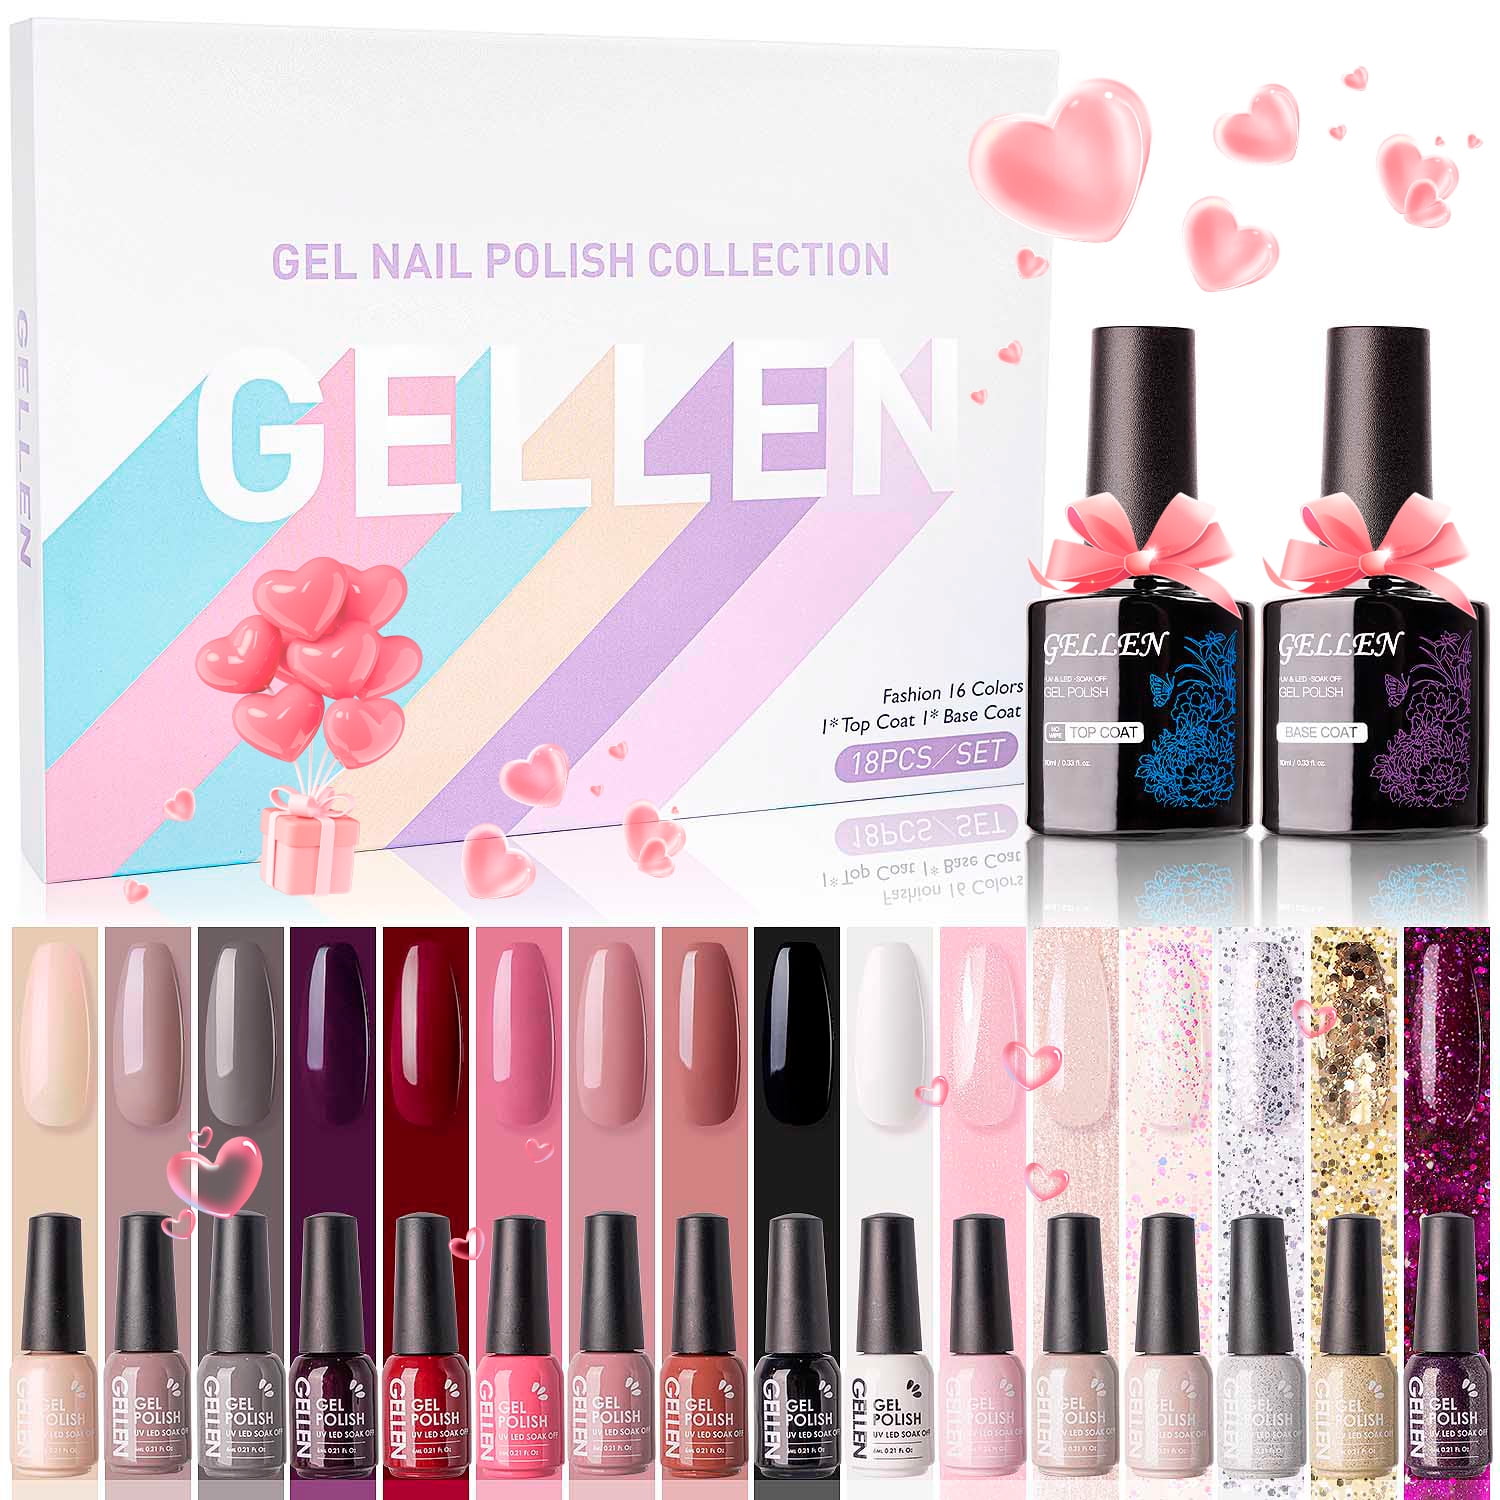 Gellen Gel Nail Polish Kit, Pink Nudes Warm Neutrals Gel Polish Set, 6  Colors Soak Off UV Fall Nail Gel Polish, Home Salon Gel Manicure Kit Nude  Neutrals